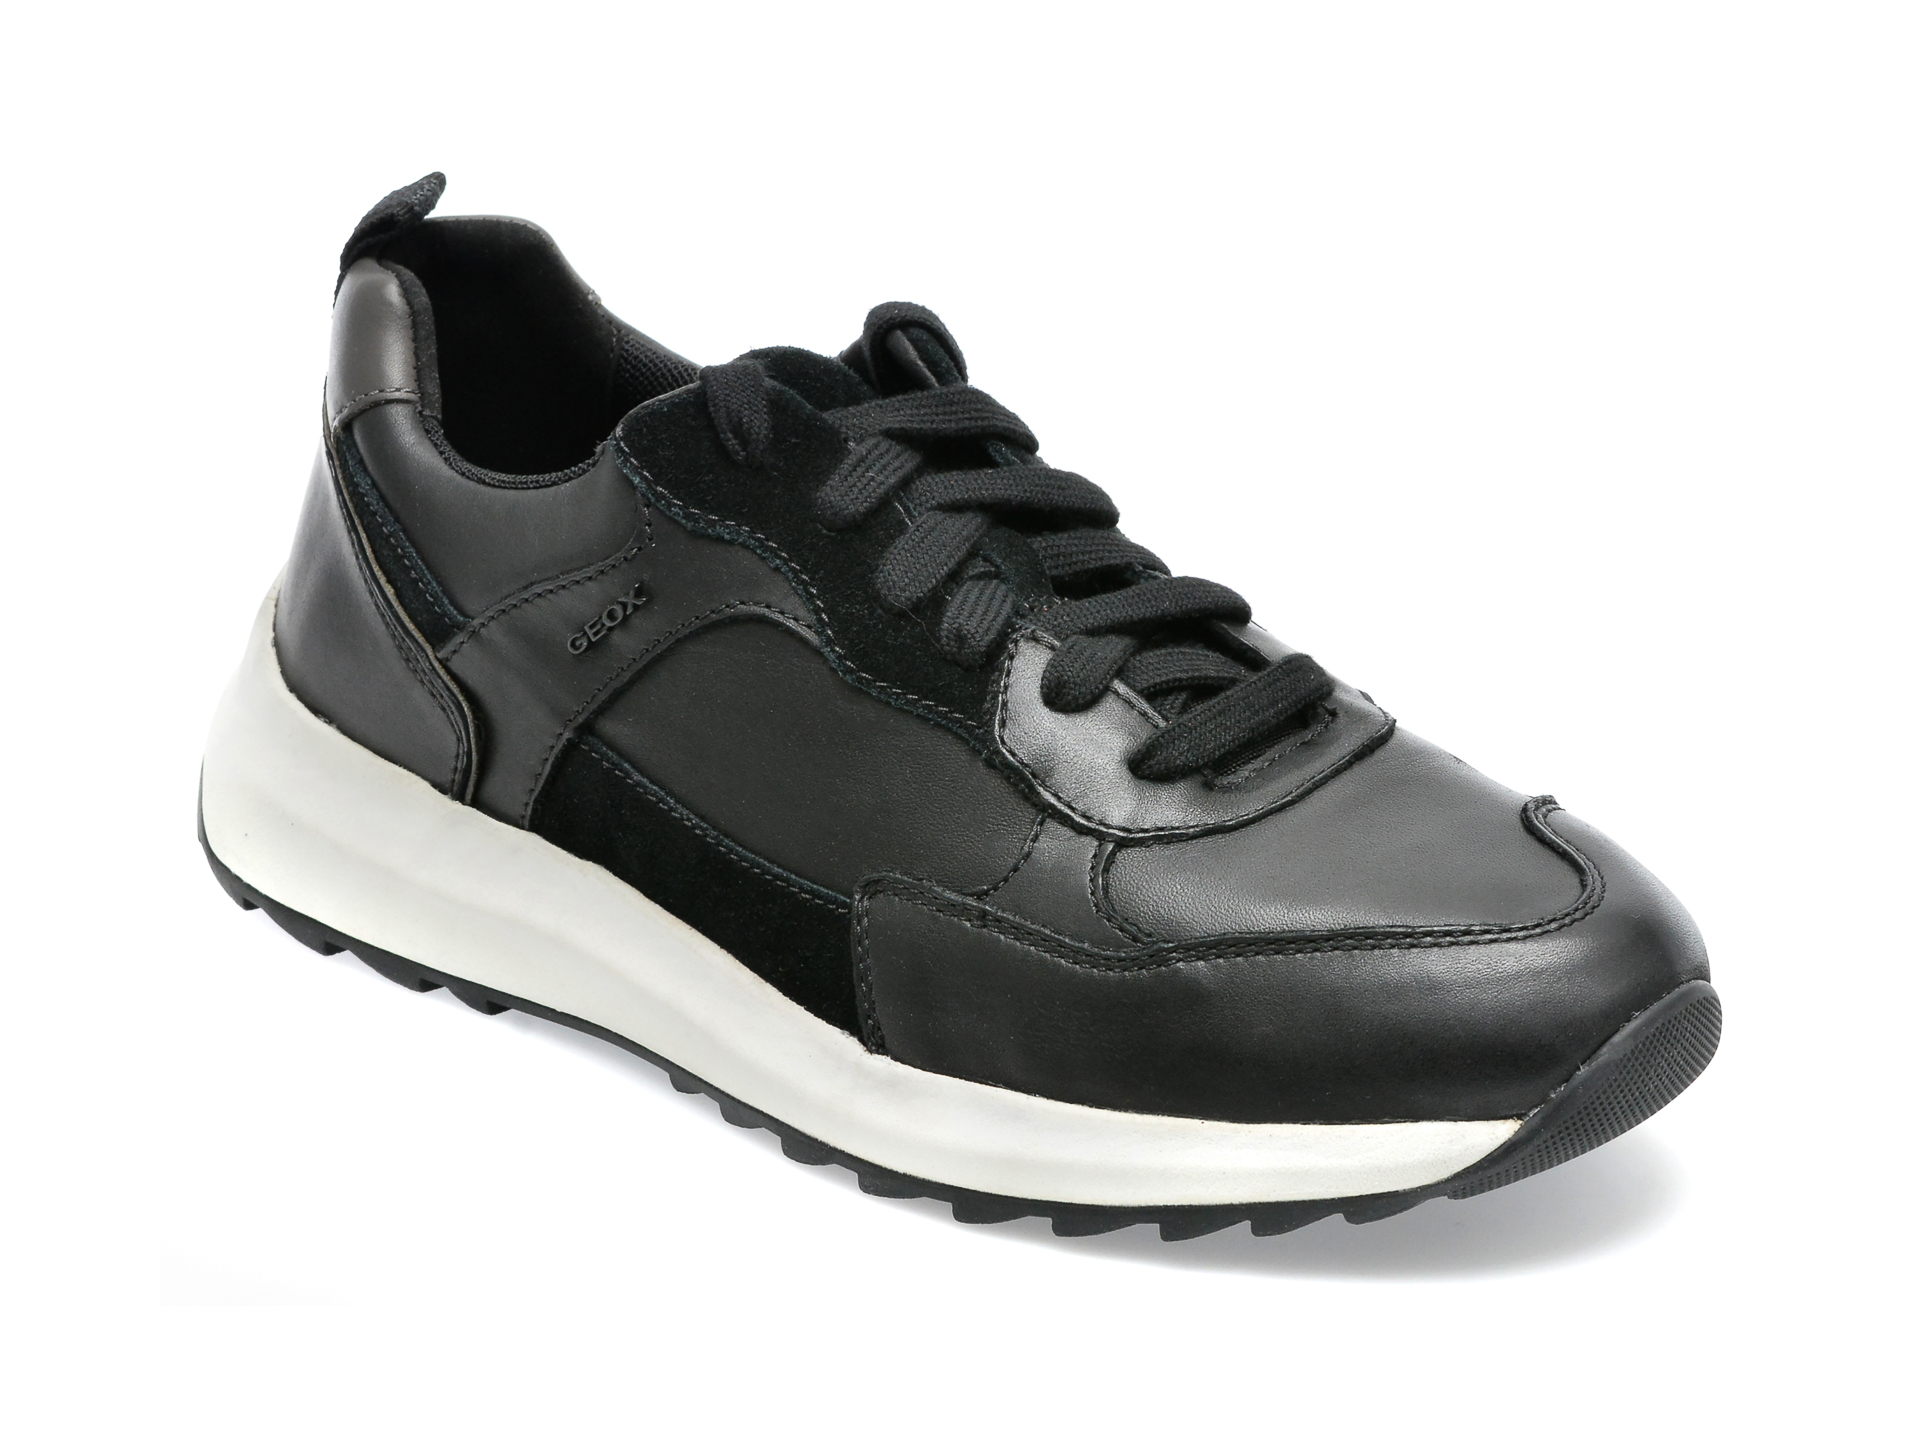 Pantofi sport GEOX negri, U25E4A, din piele naturala /barbati/pantofi /barbati/pantofi